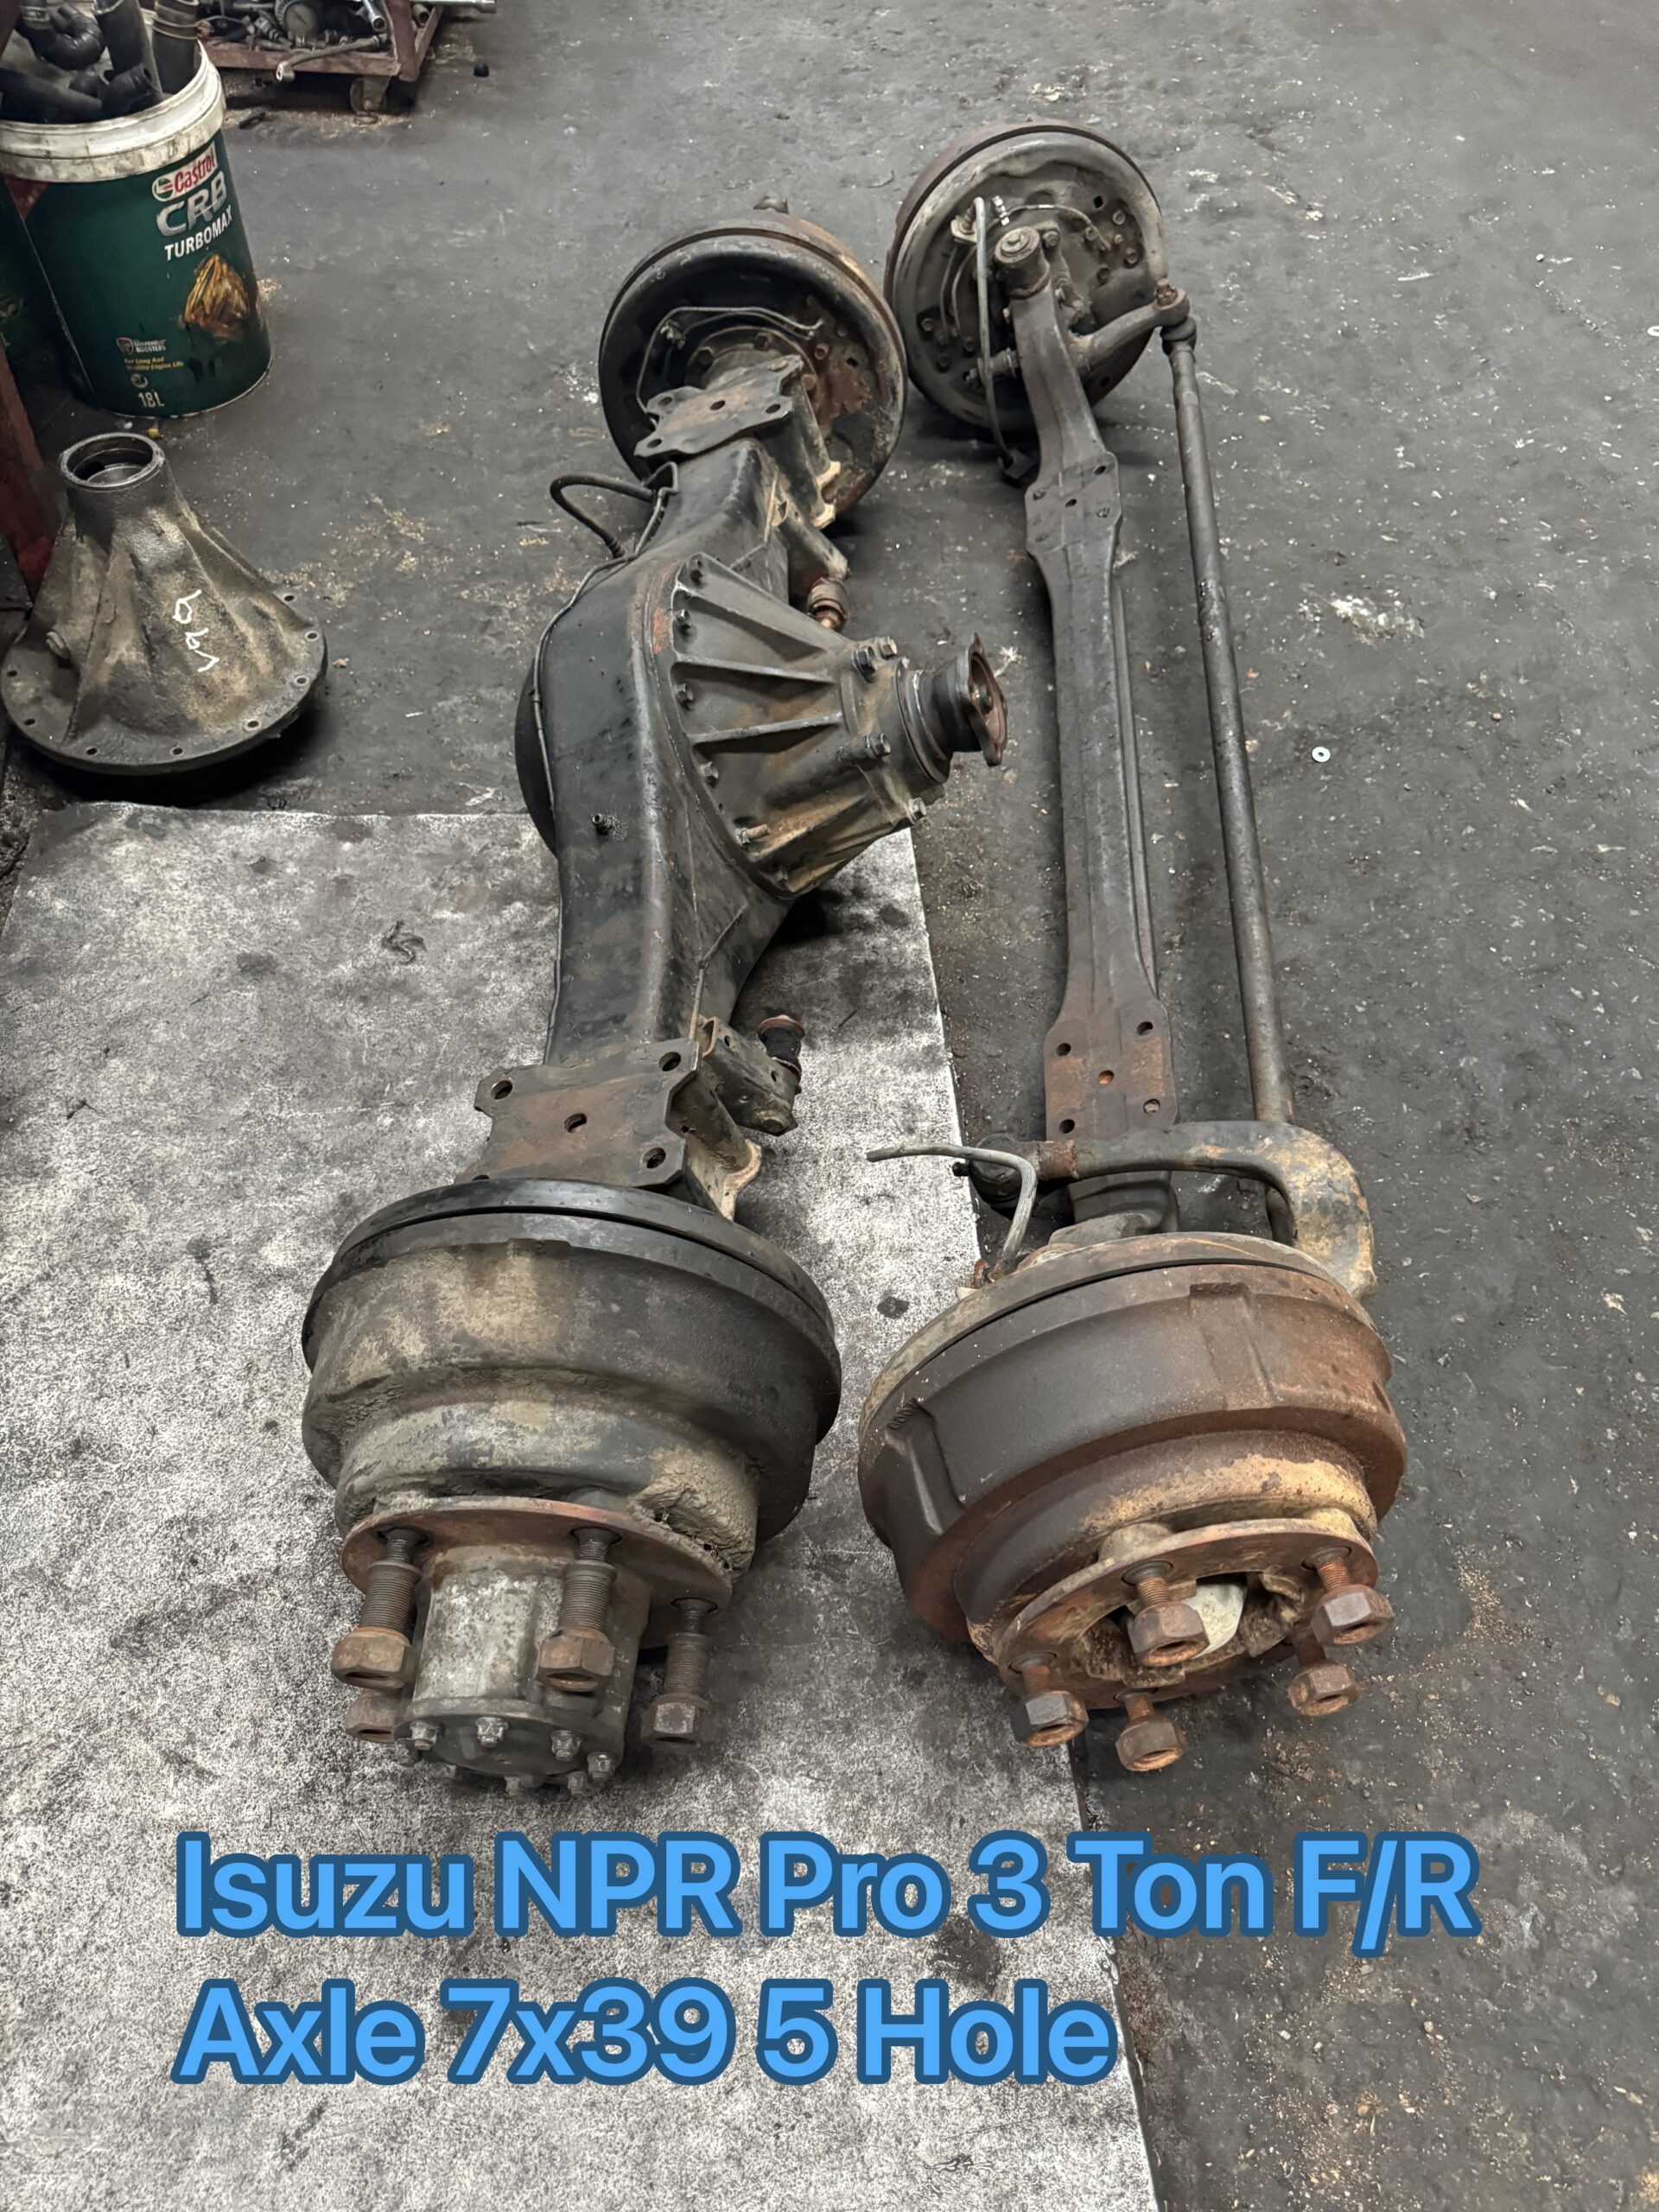 Isuzu NPR Pro 3 Ton Front Rear Axle 7×39 5 Hole